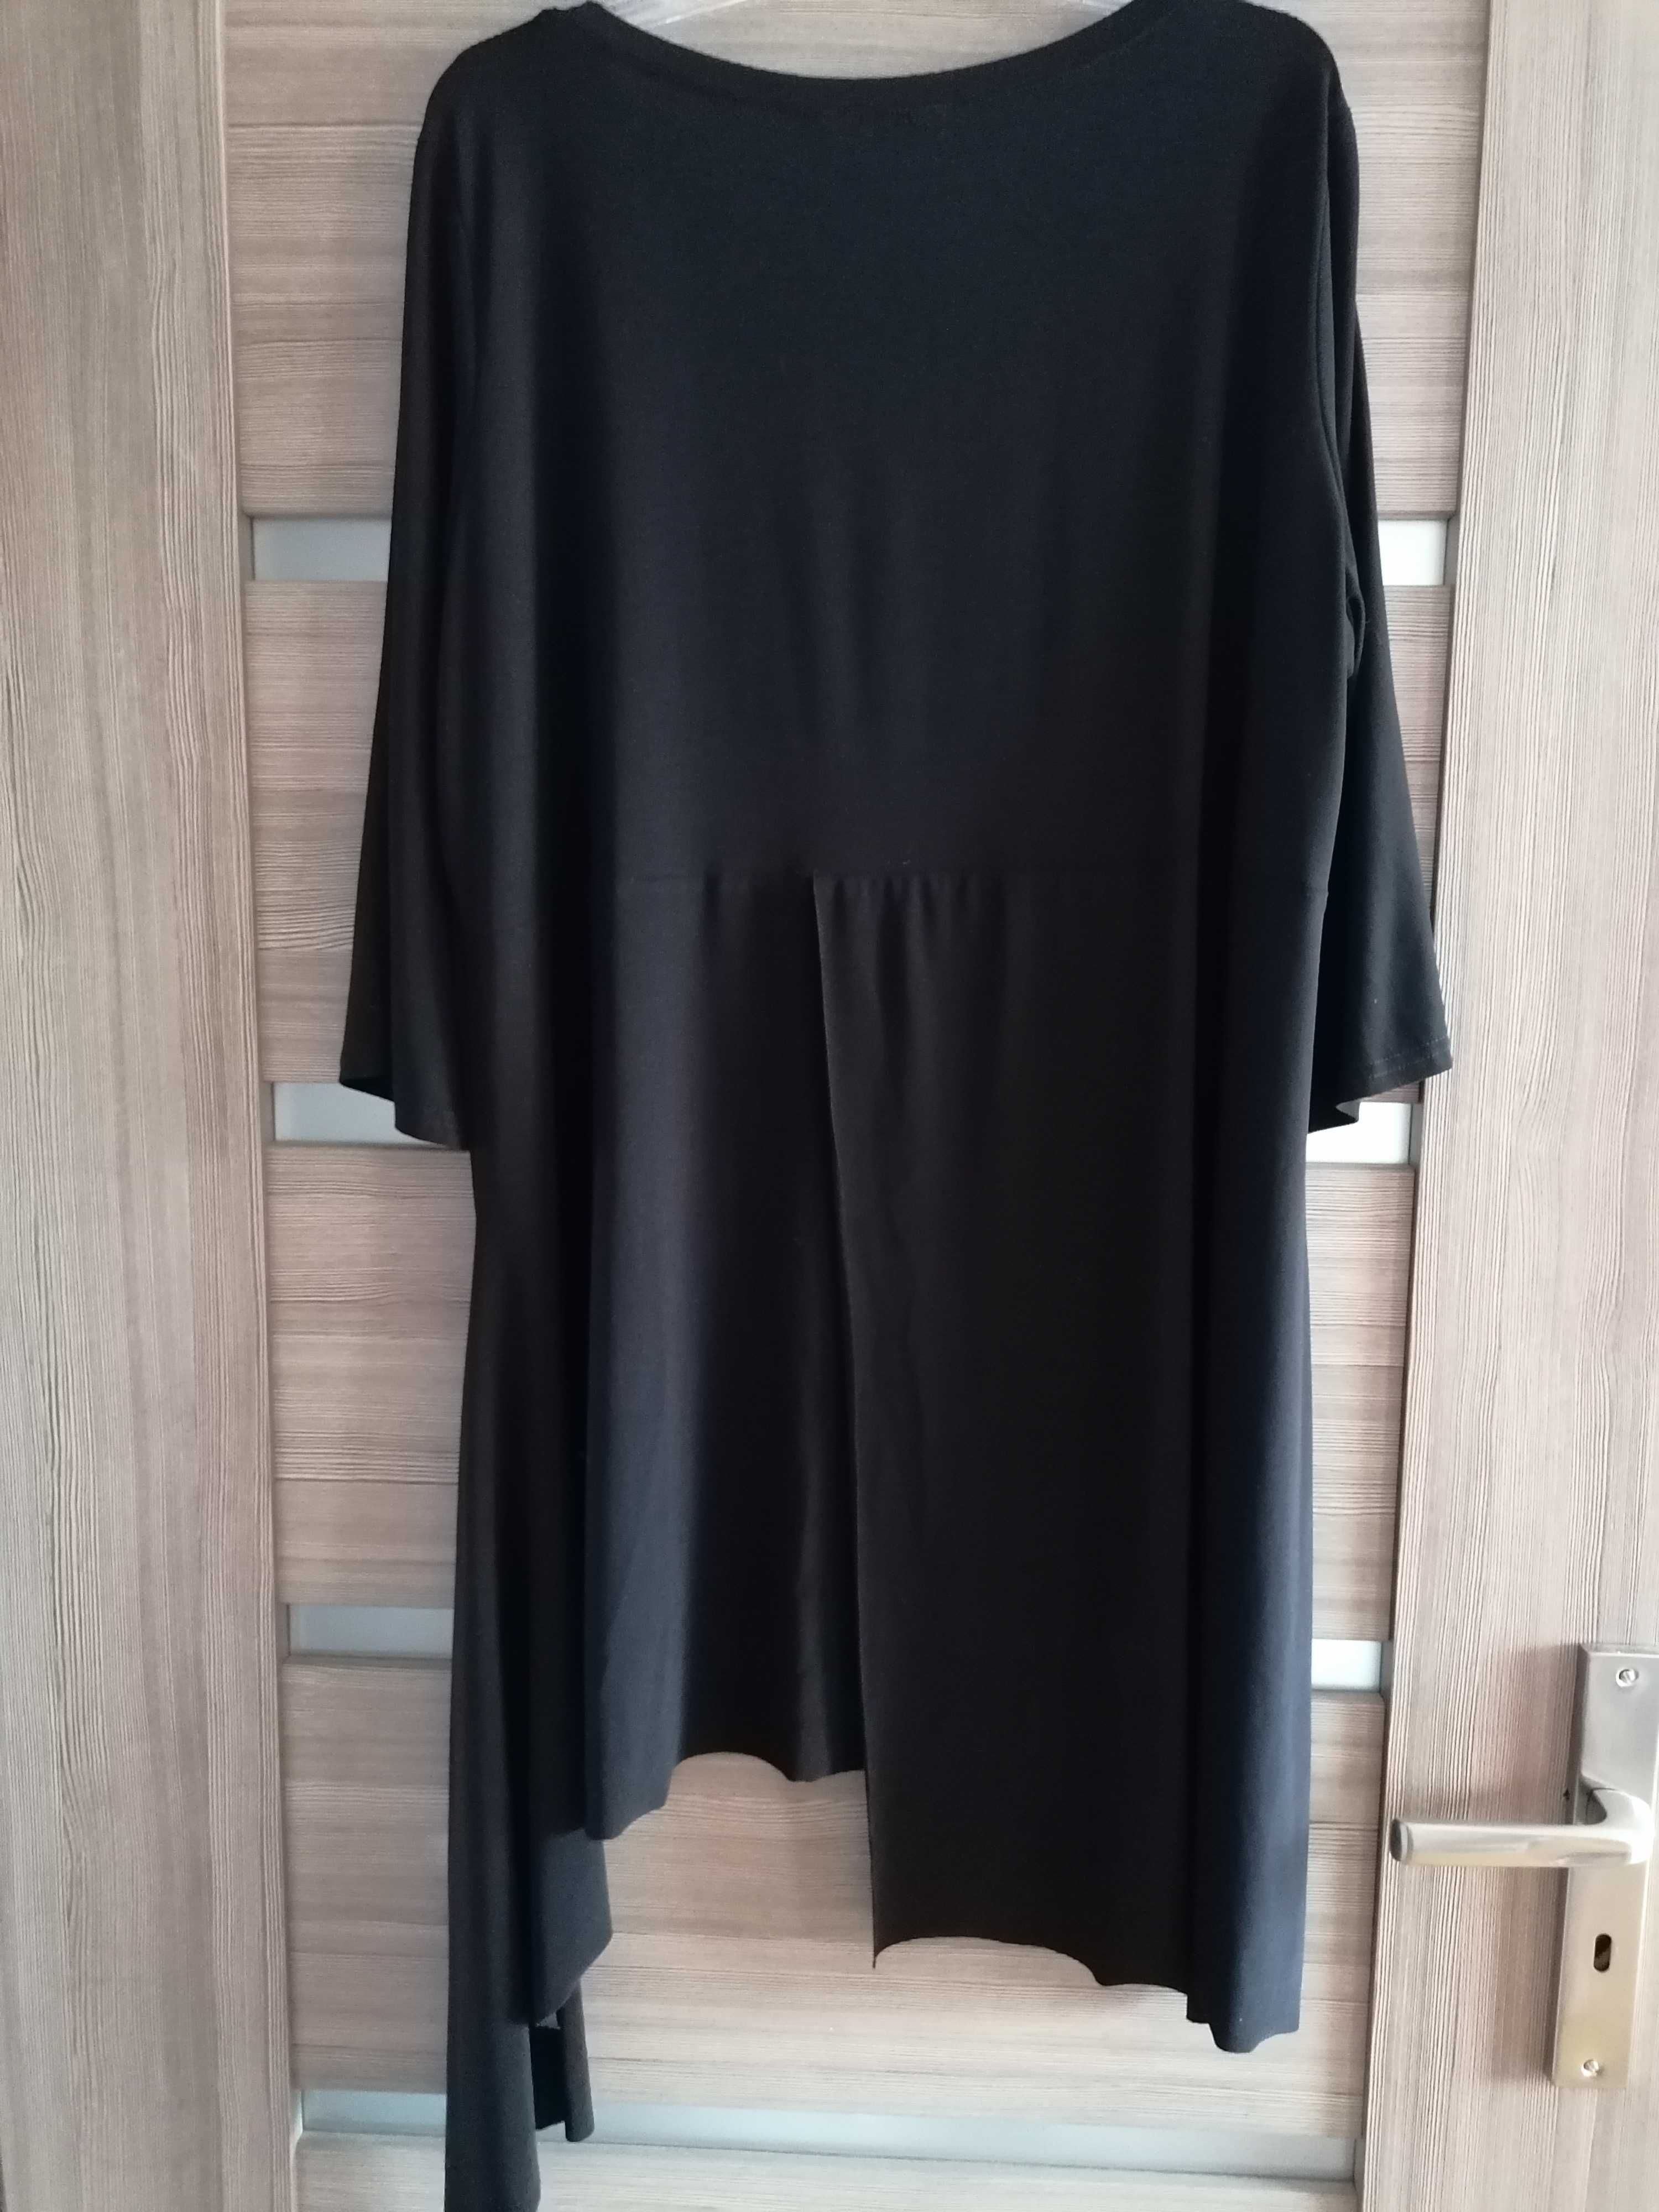 Bluzko-tunika czarna, elegancka, 2xl